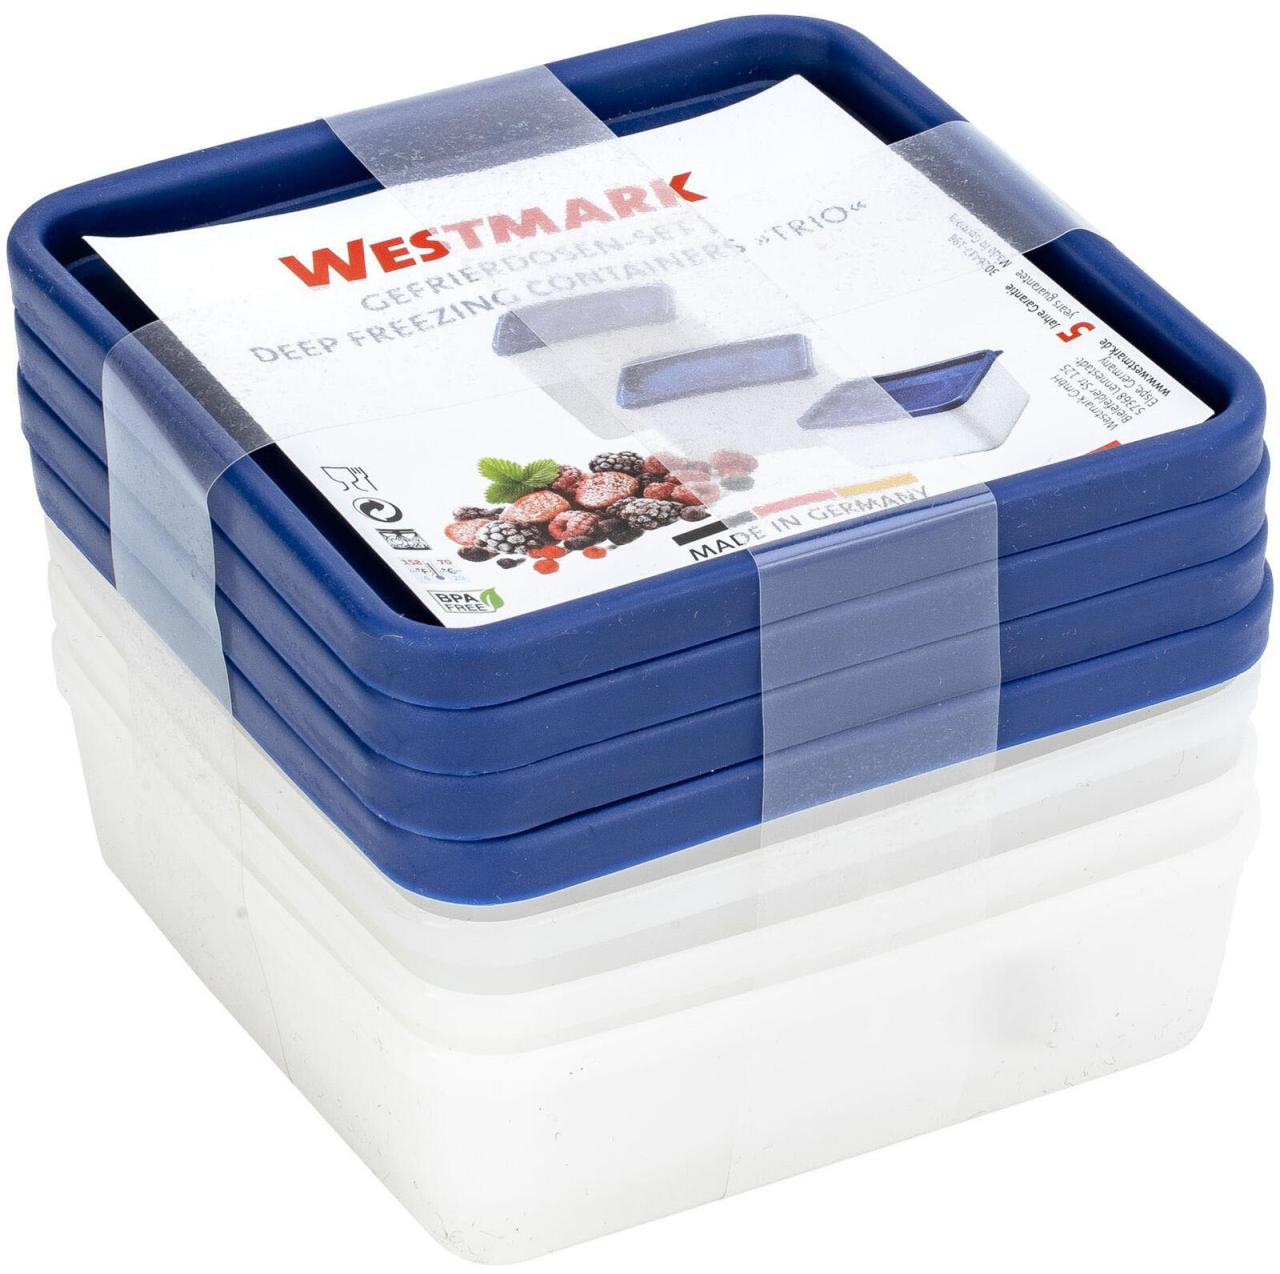 WESTMARK Frischhaltedosen-Set Trio 3.6 cm hoch 0,25 l weiß, blau von WESTMARK